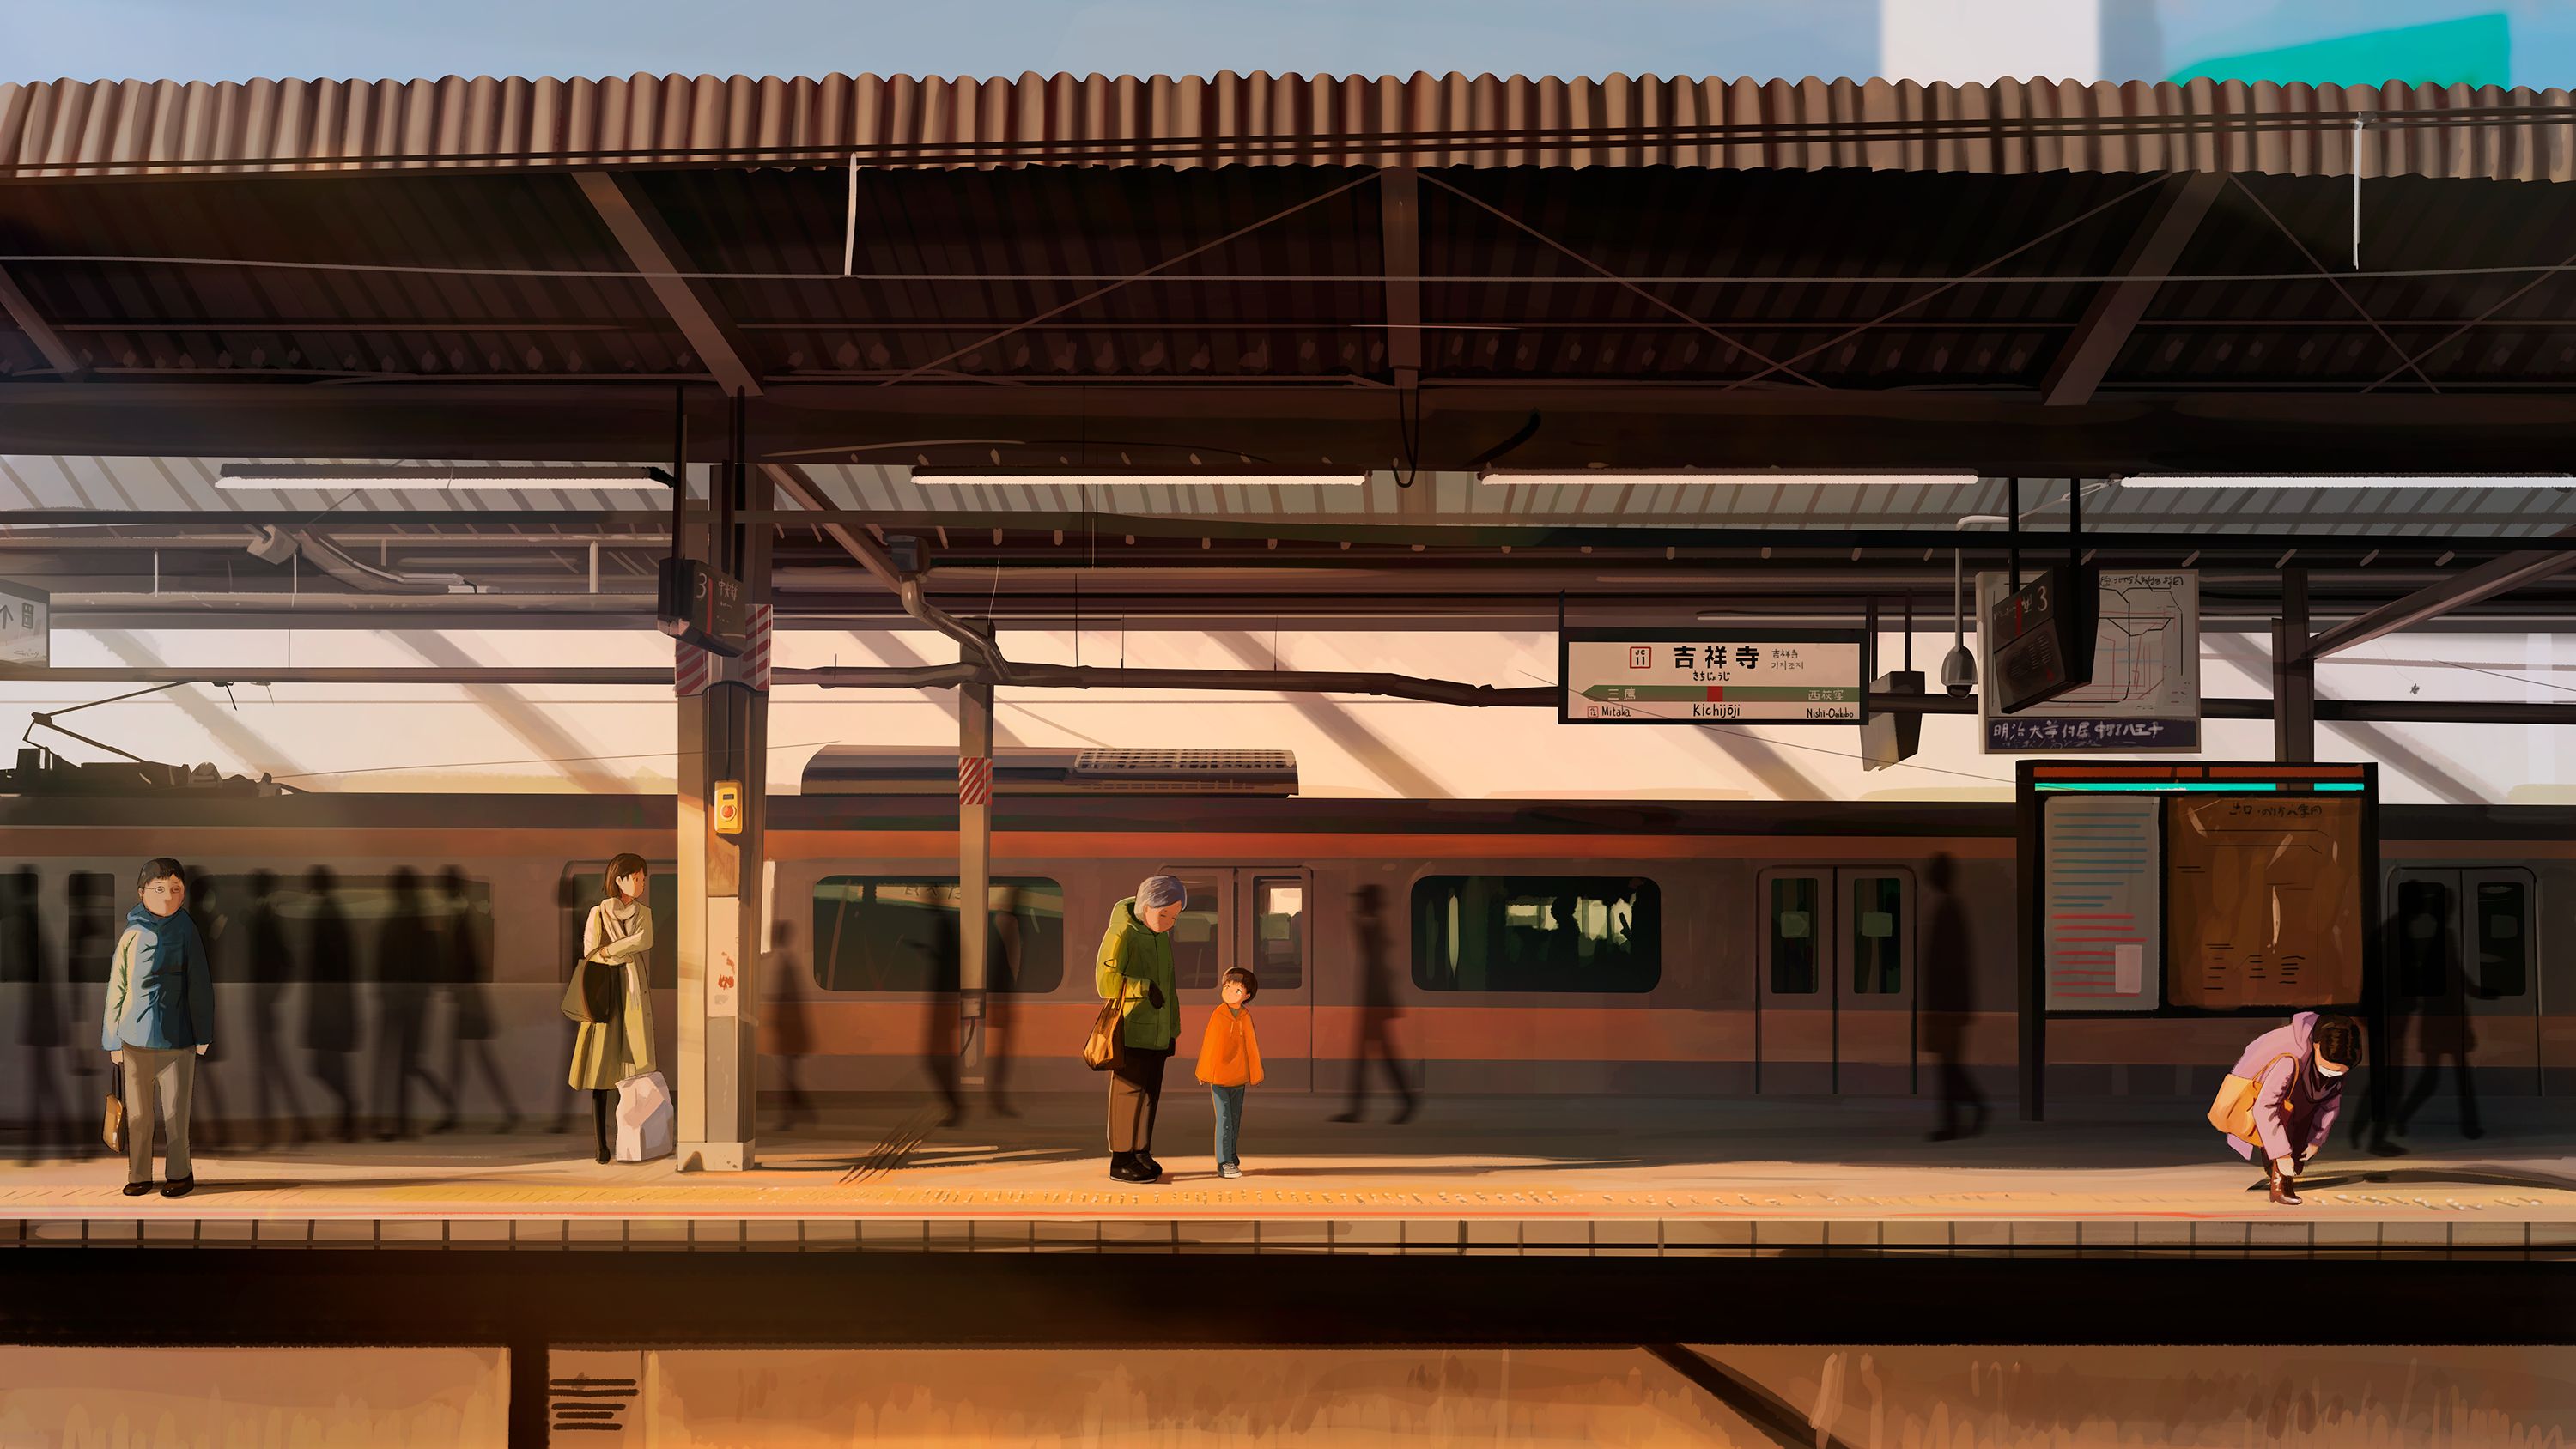 Скачать обои бесплатно Аниме, Поезд, Железнодорожная Станция, Оригинал картинка на рабочий стол ПК